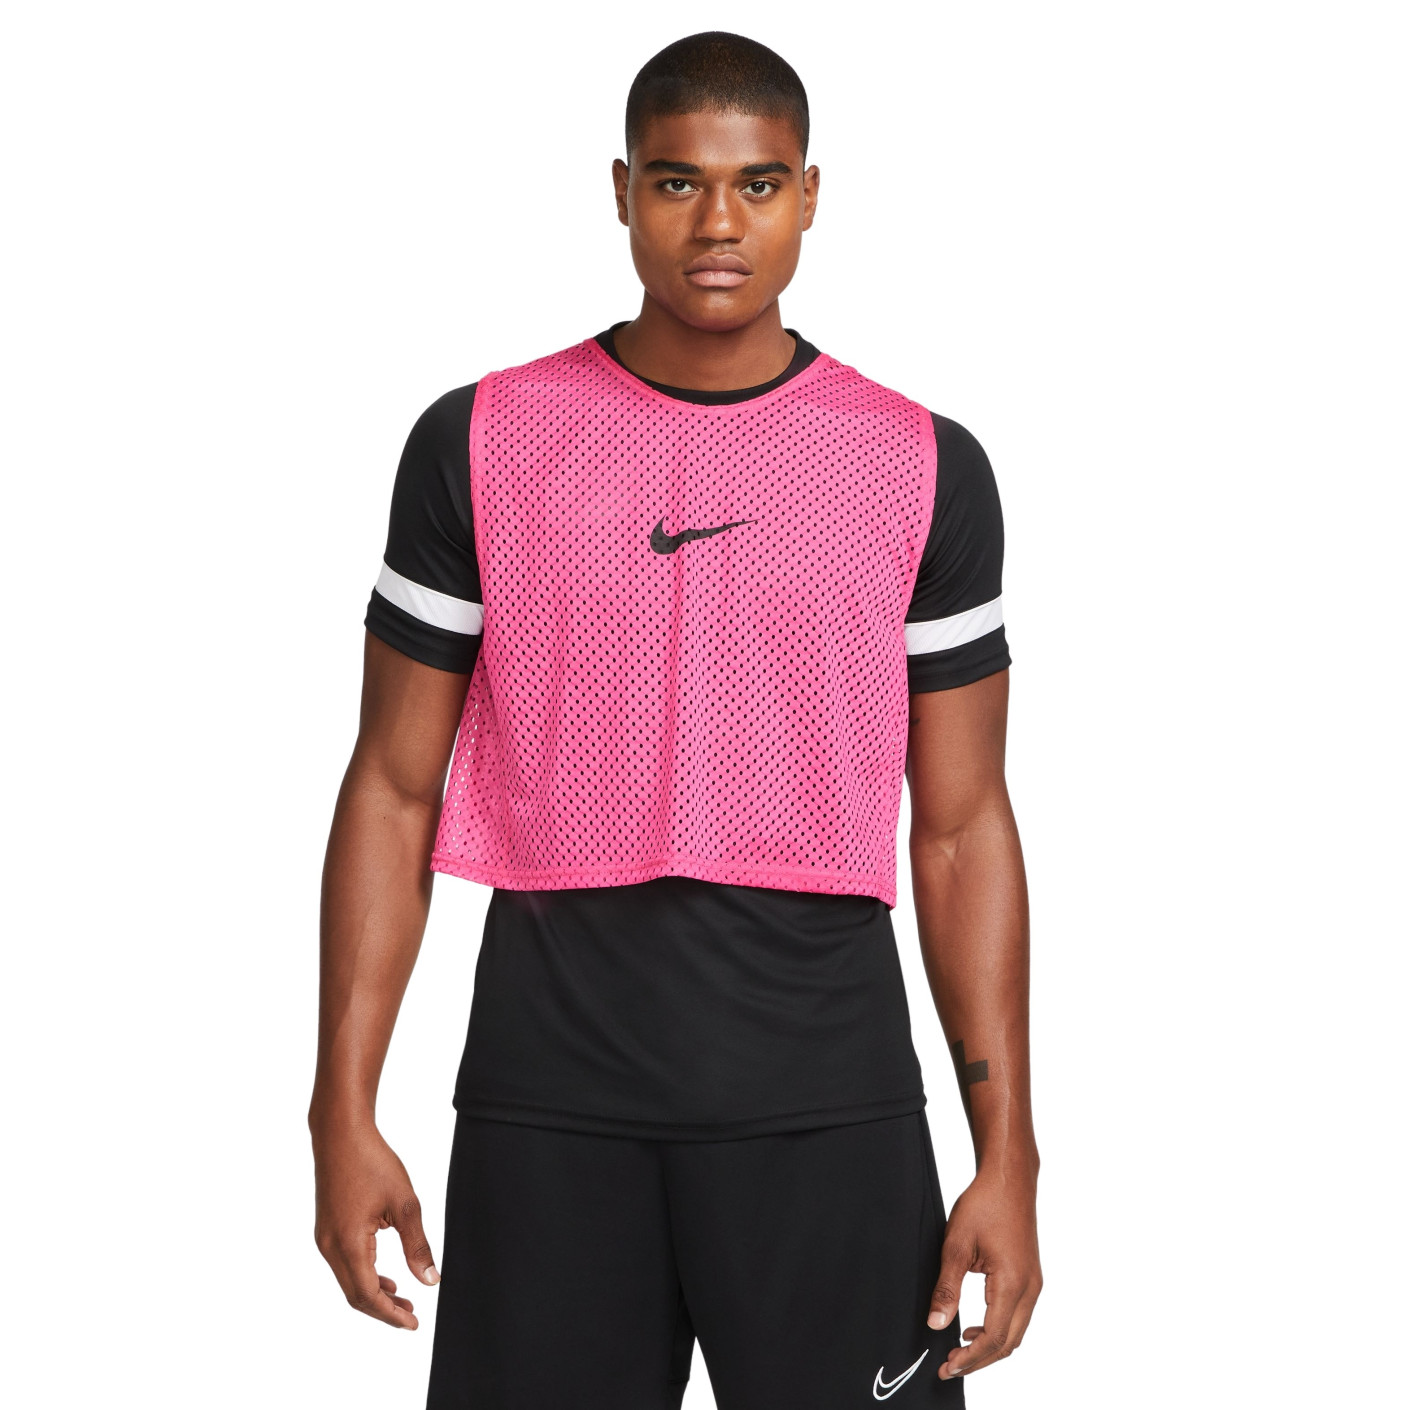 Nike Dri-Fit Park 20 Hesje Roze Zwart